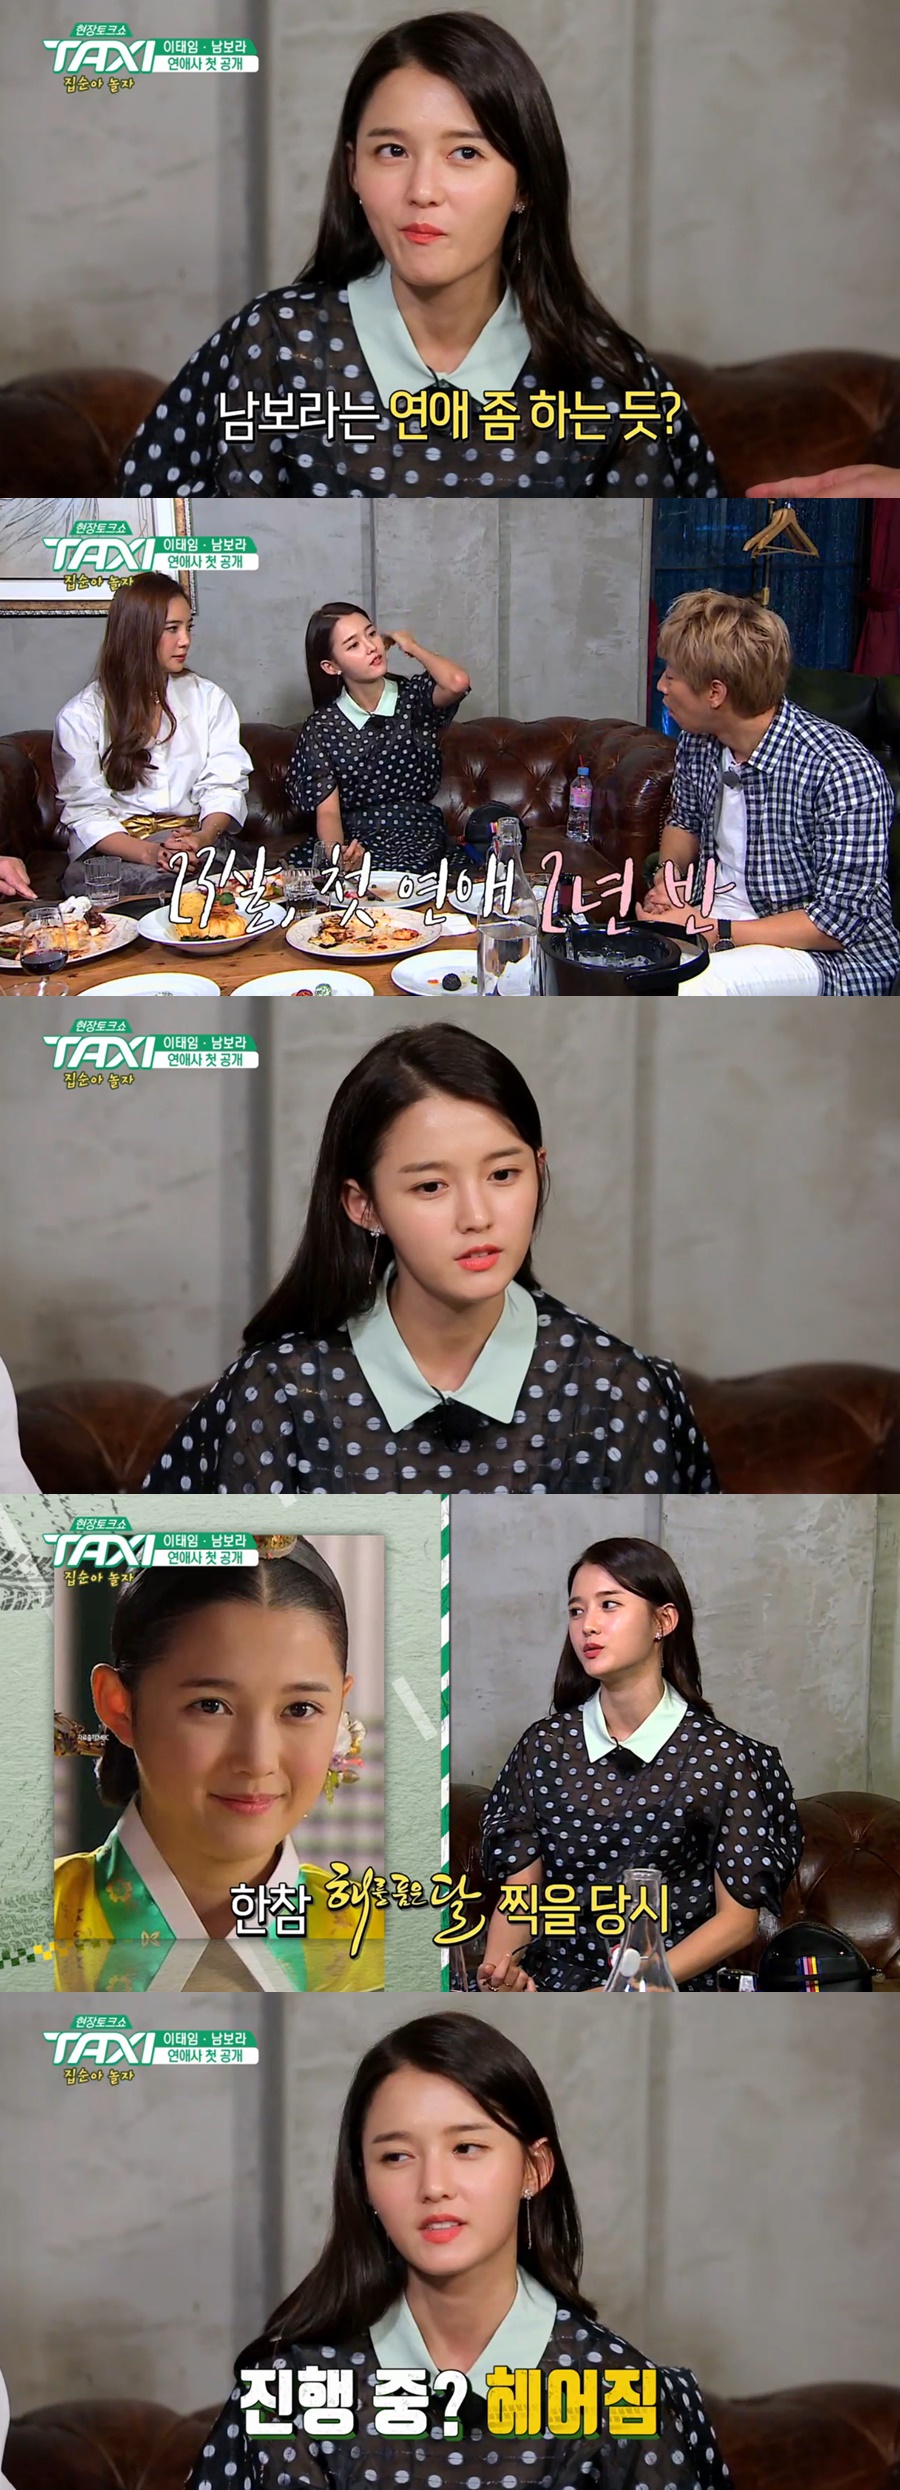 사진: 남보라 / tvN '택시' 방송 캡처